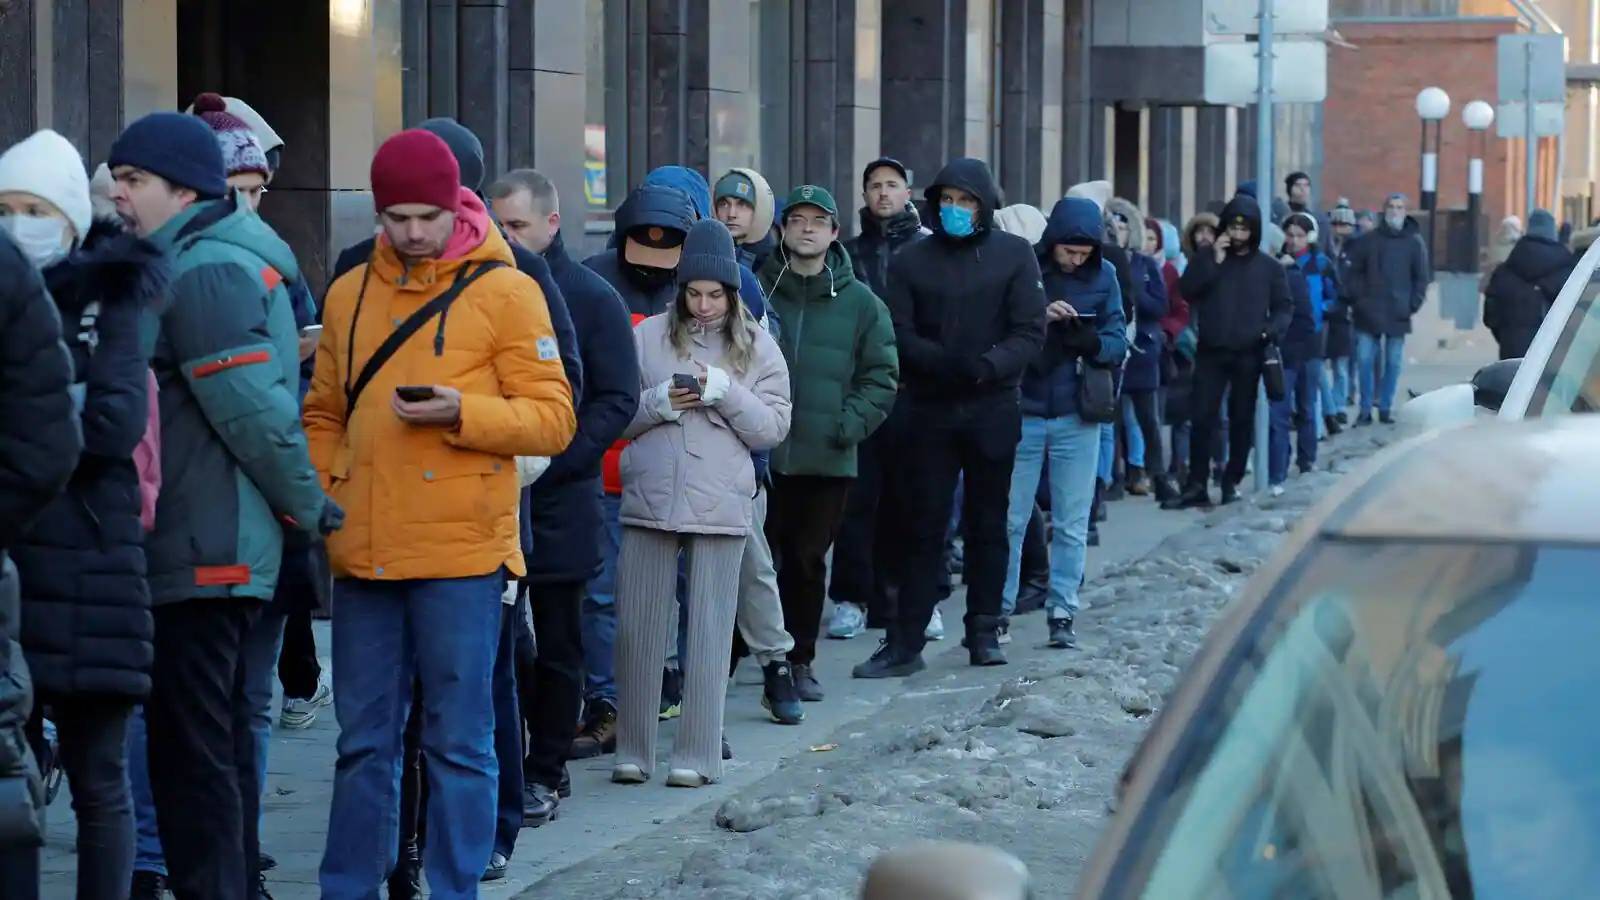 VIDEO Långa köer av ryssar som tar ut valuta från uttagsautomater